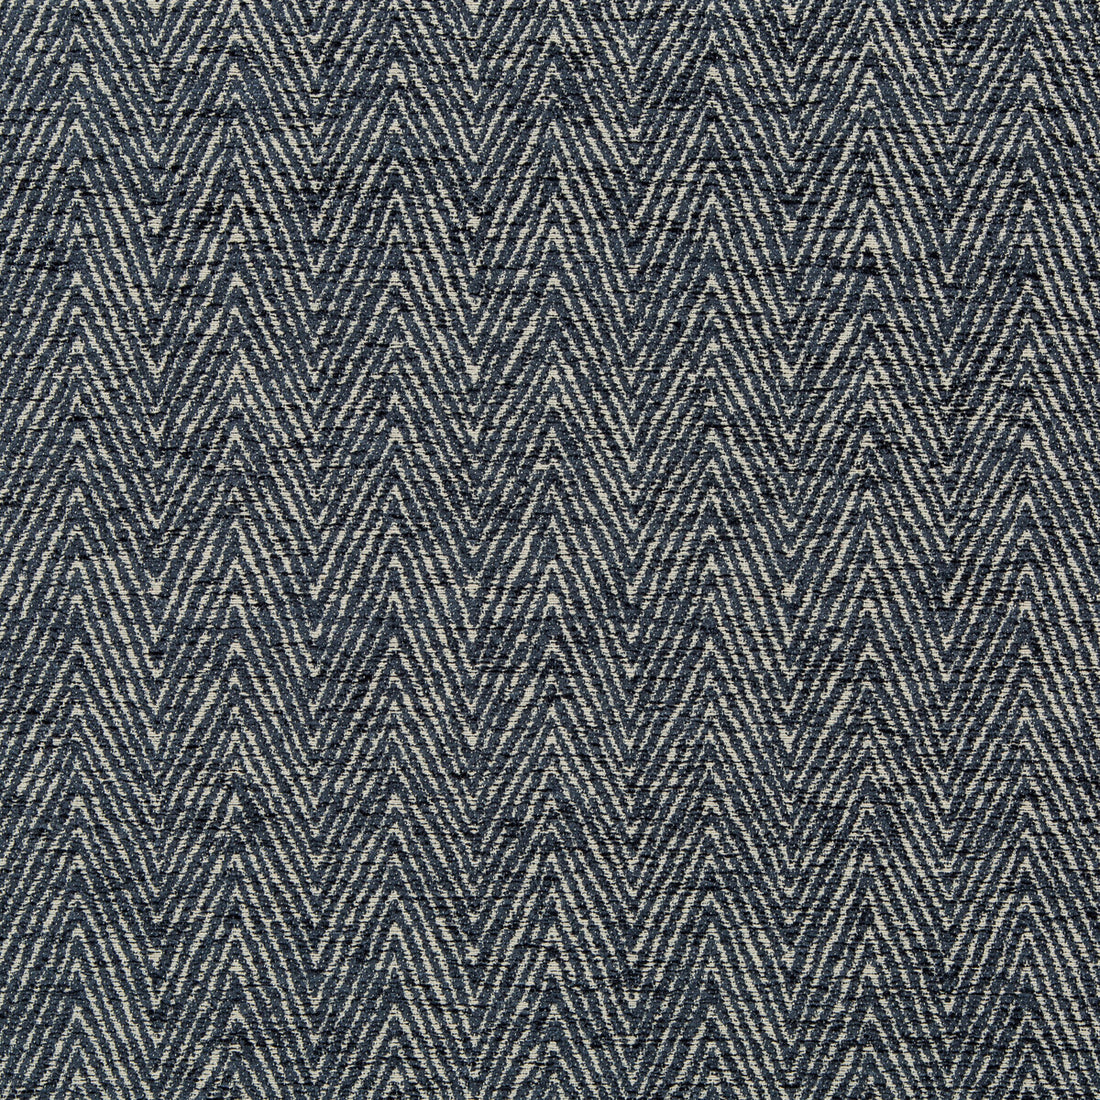 Kravet Design fabric in 35708-511 color - pattern 35708.511.0 - by Kravet Design